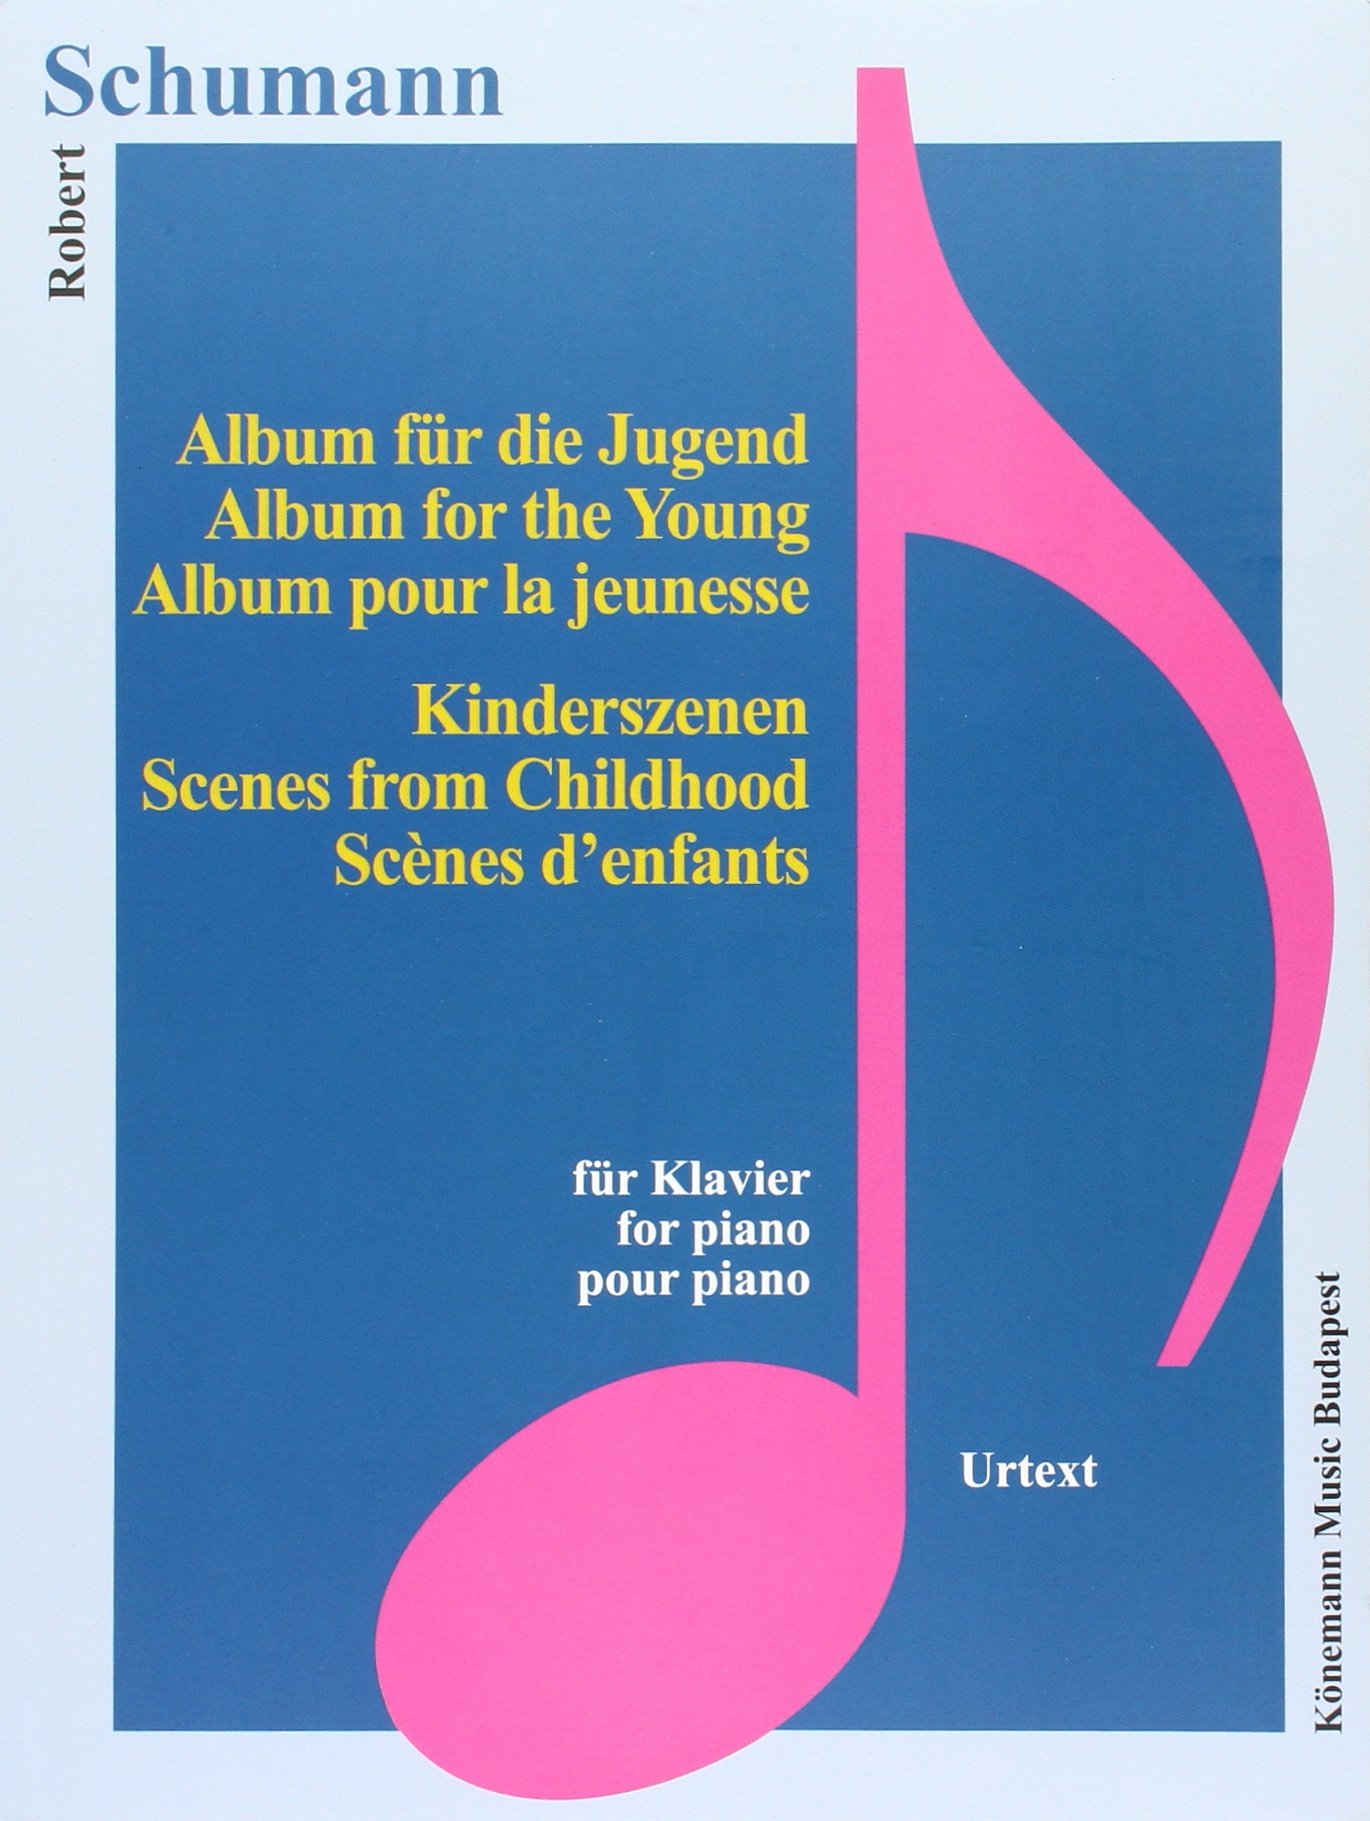 Schumann - Album fur die Jugend, Kinderszenen - Könemann